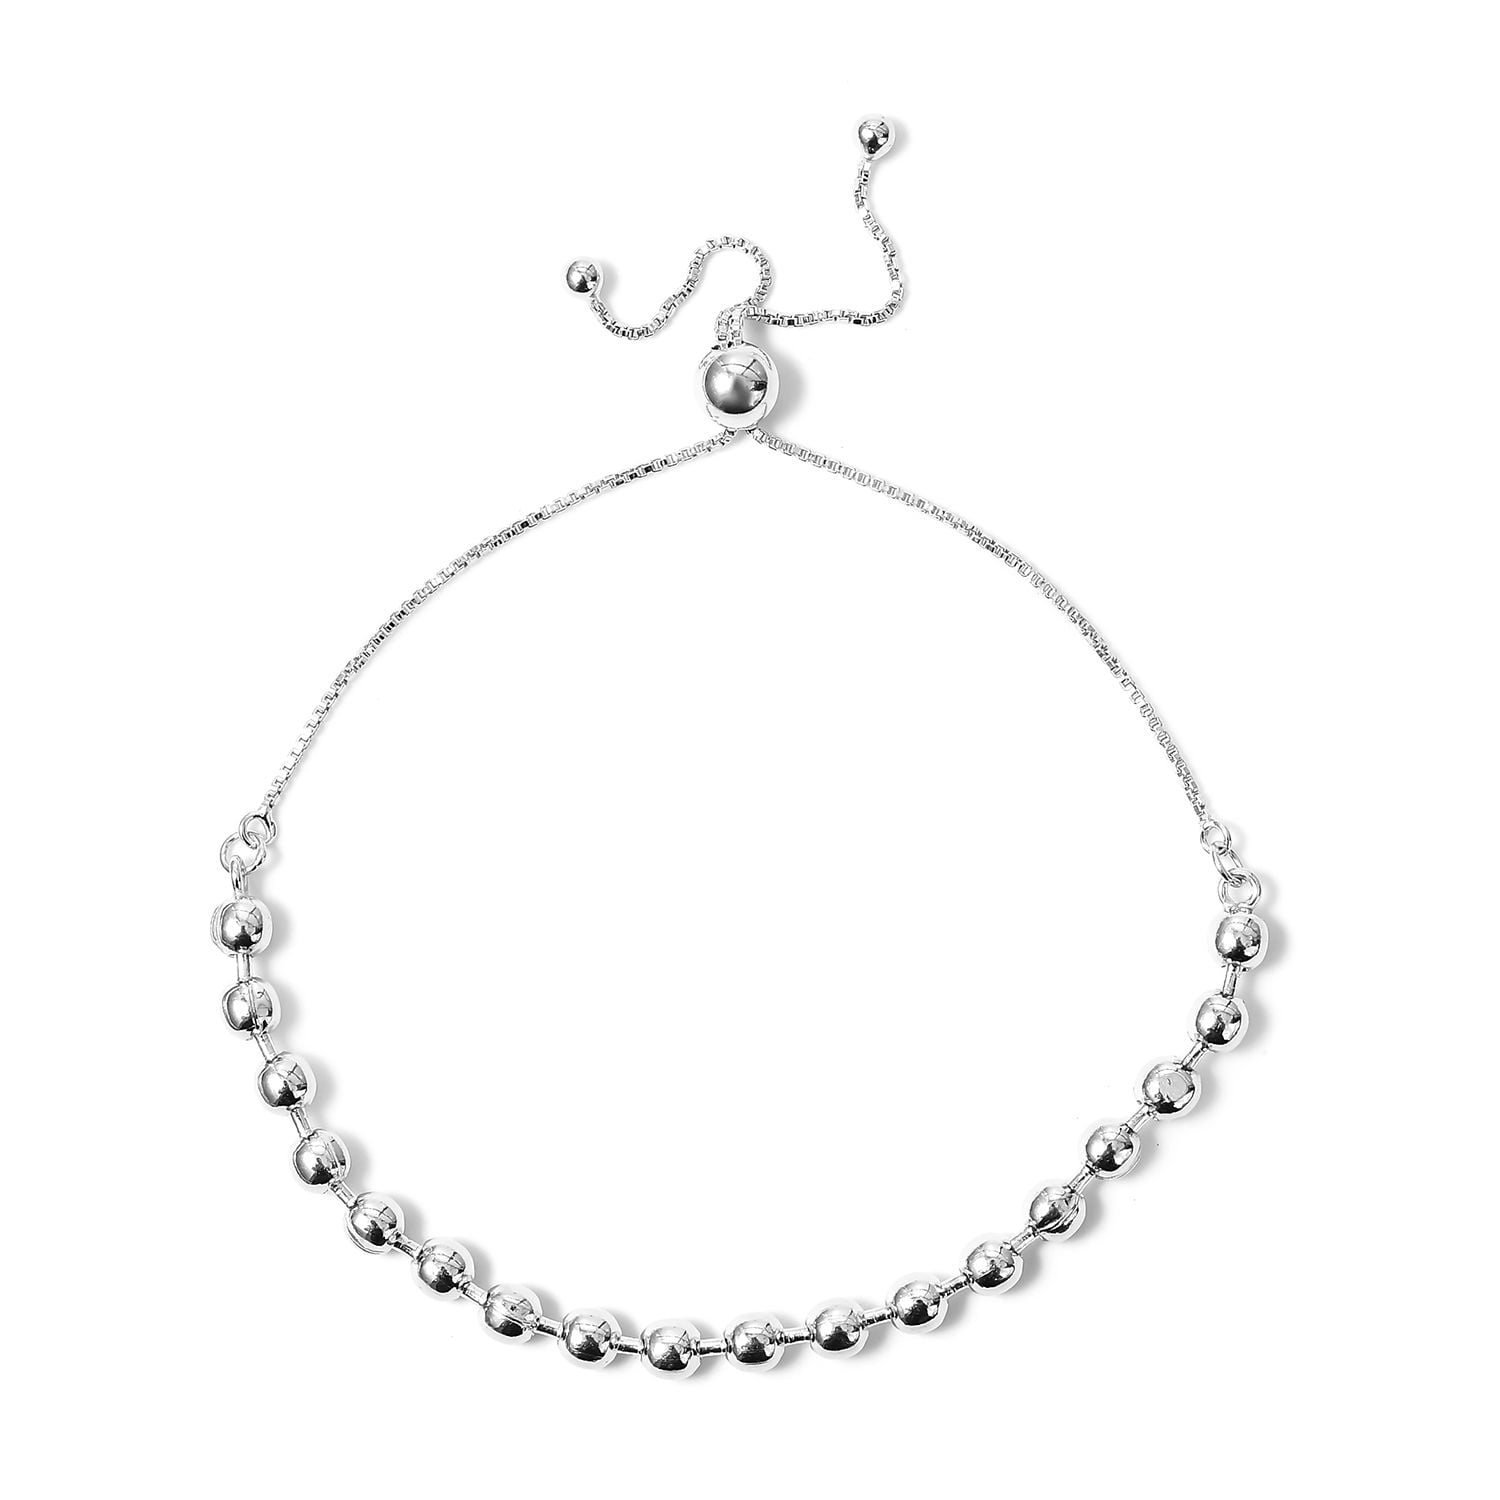 Gift For Her Black Silver Multicolor Three Choise Sphere Design 925K Sterling Silver Necklace Bracelet Set